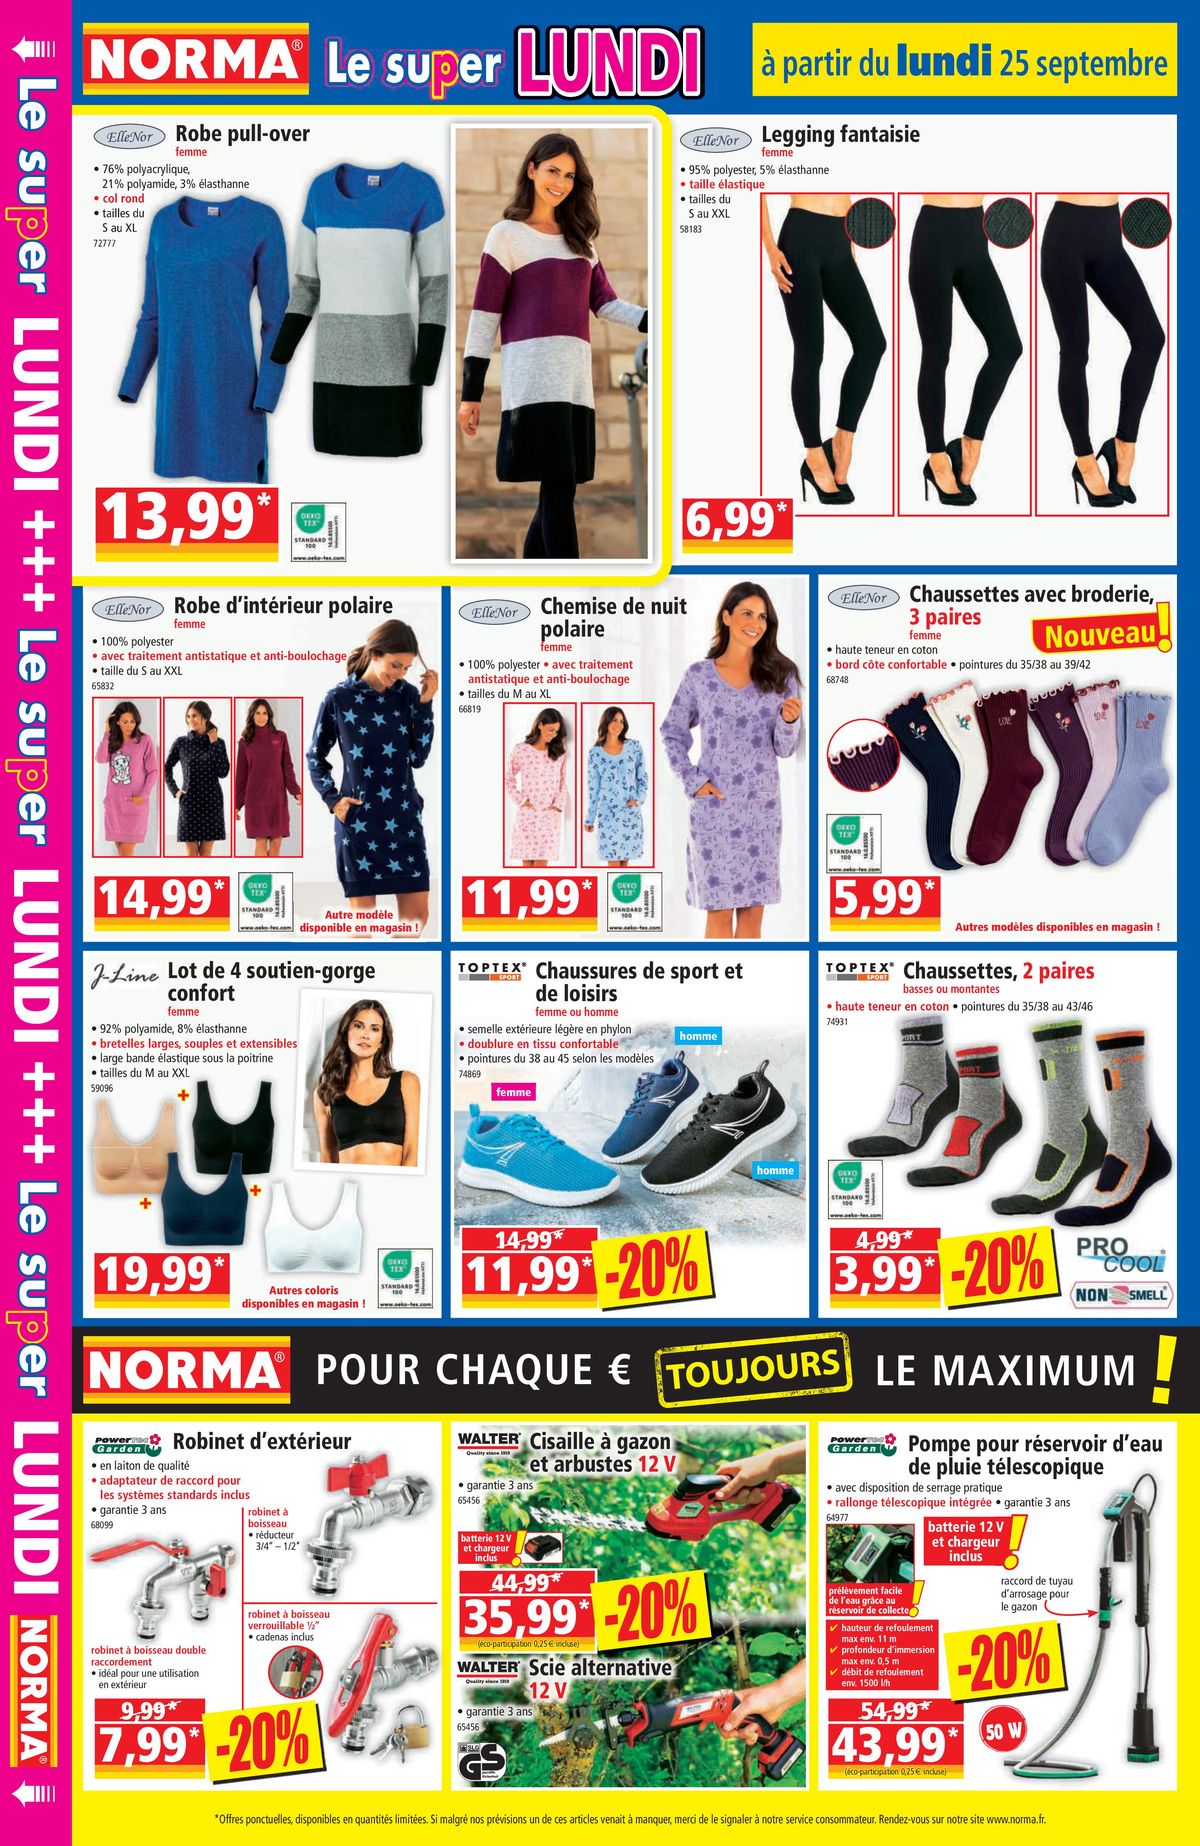 Catalogue Pour chaque €uro le maximum, page 00012